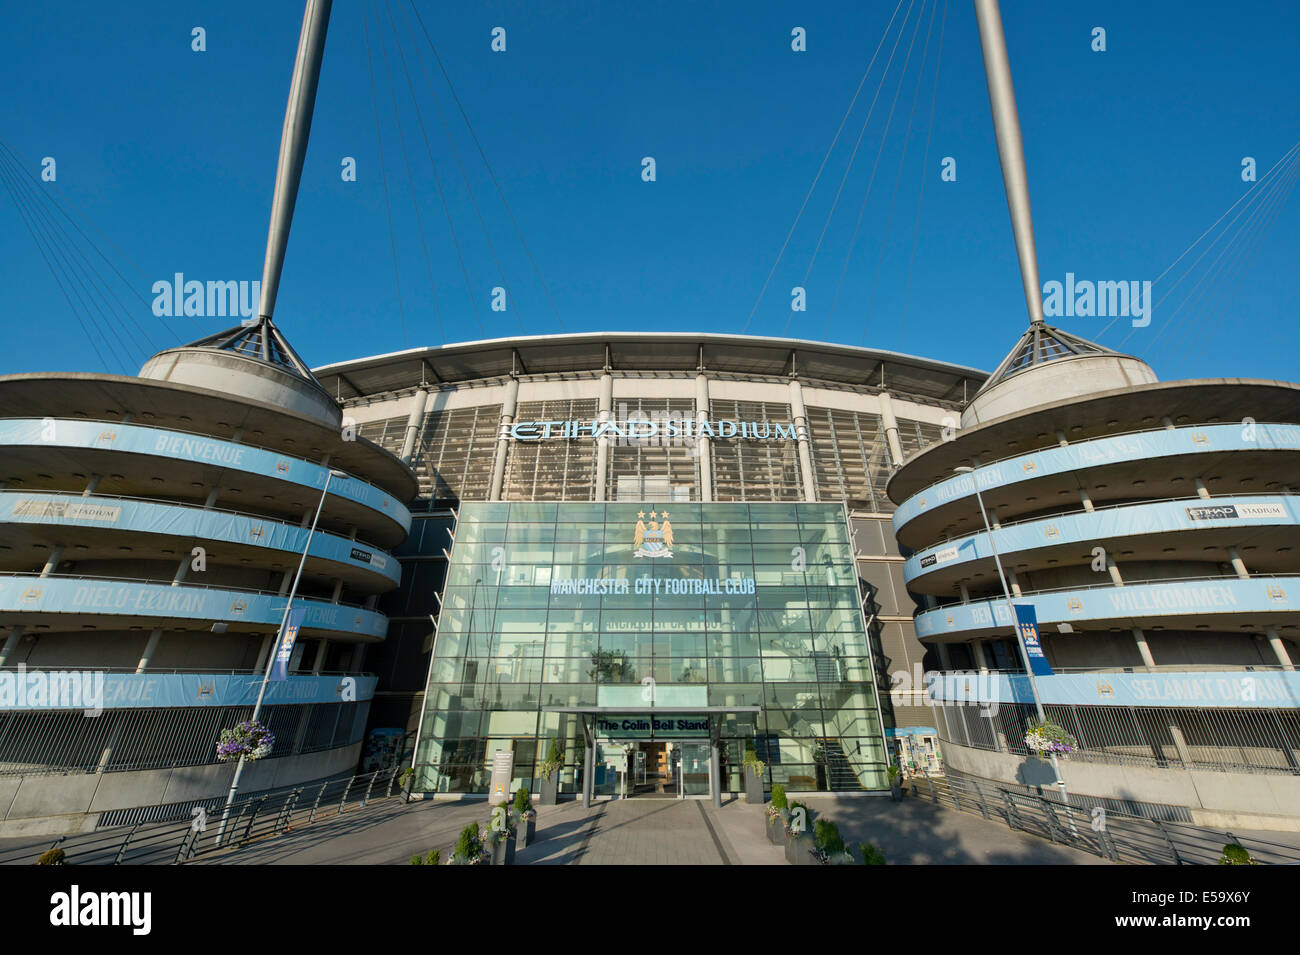 Una vista externa del Etihad Stadium, hogar de Barclays Premier League club Manchester City Football Club (sólo para uso editorial). Foto de stock